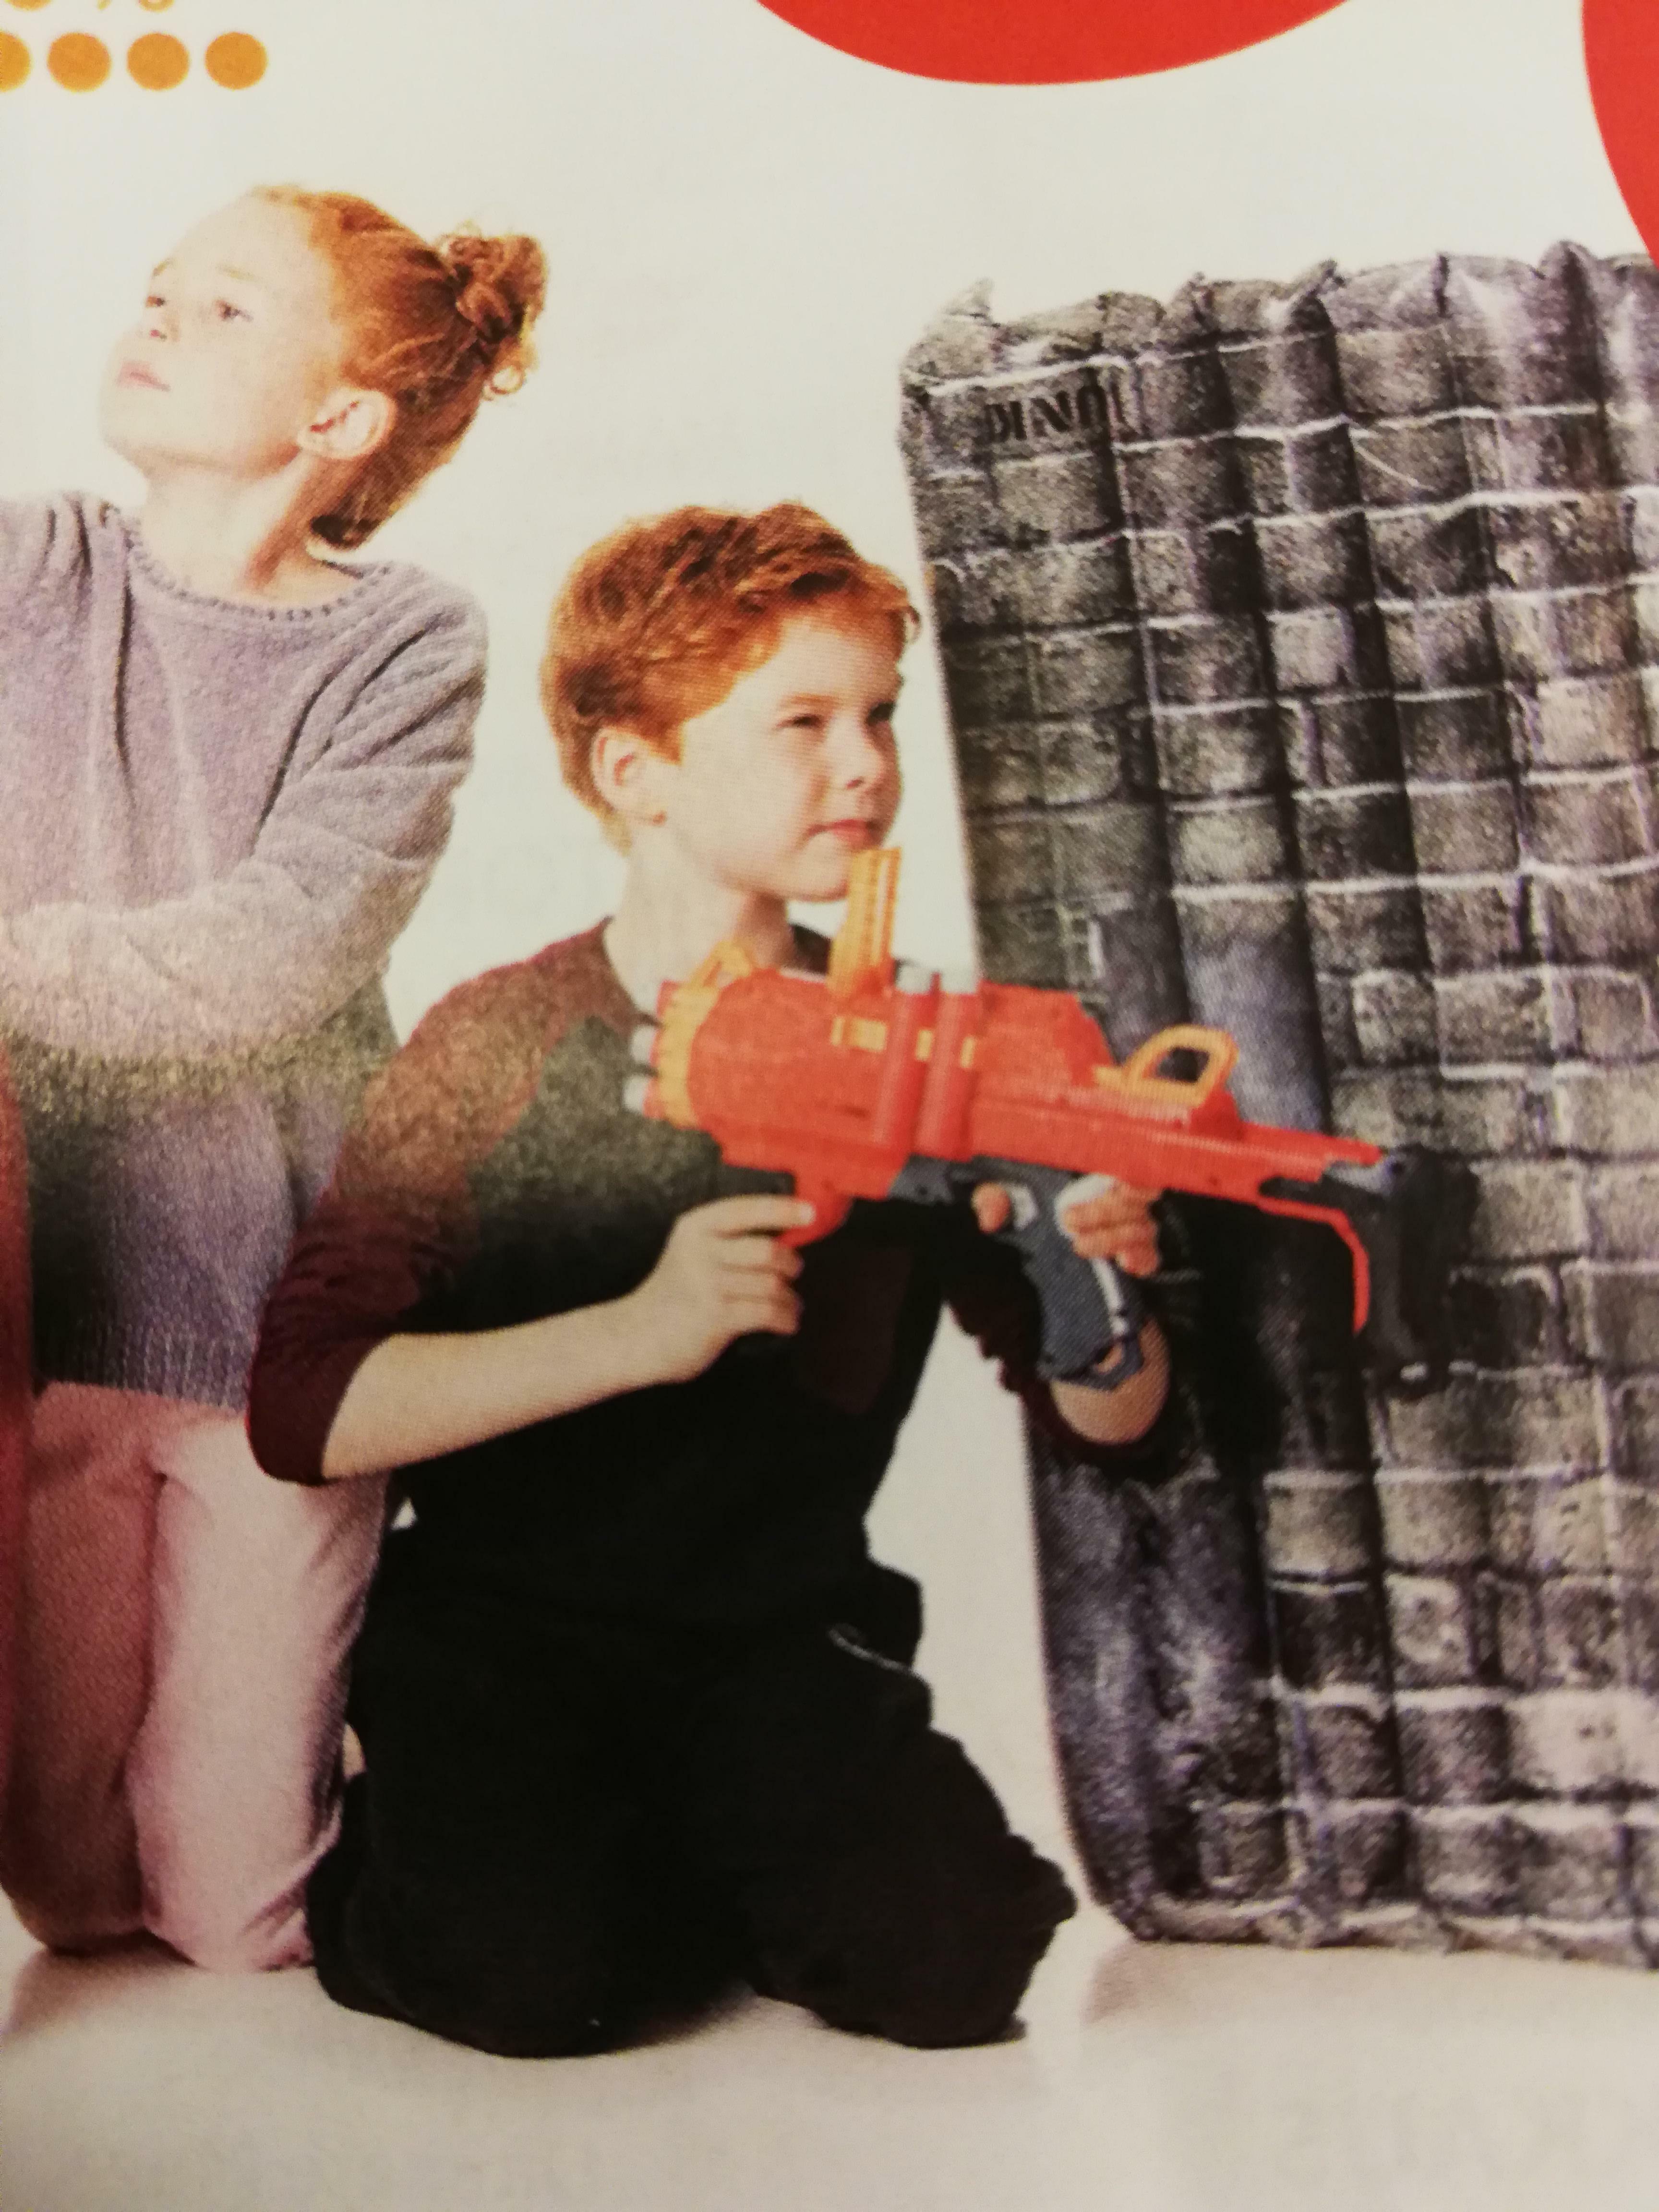 cette publicité d'un enfant qui tient un pistolet nerf de la mauvaise façon